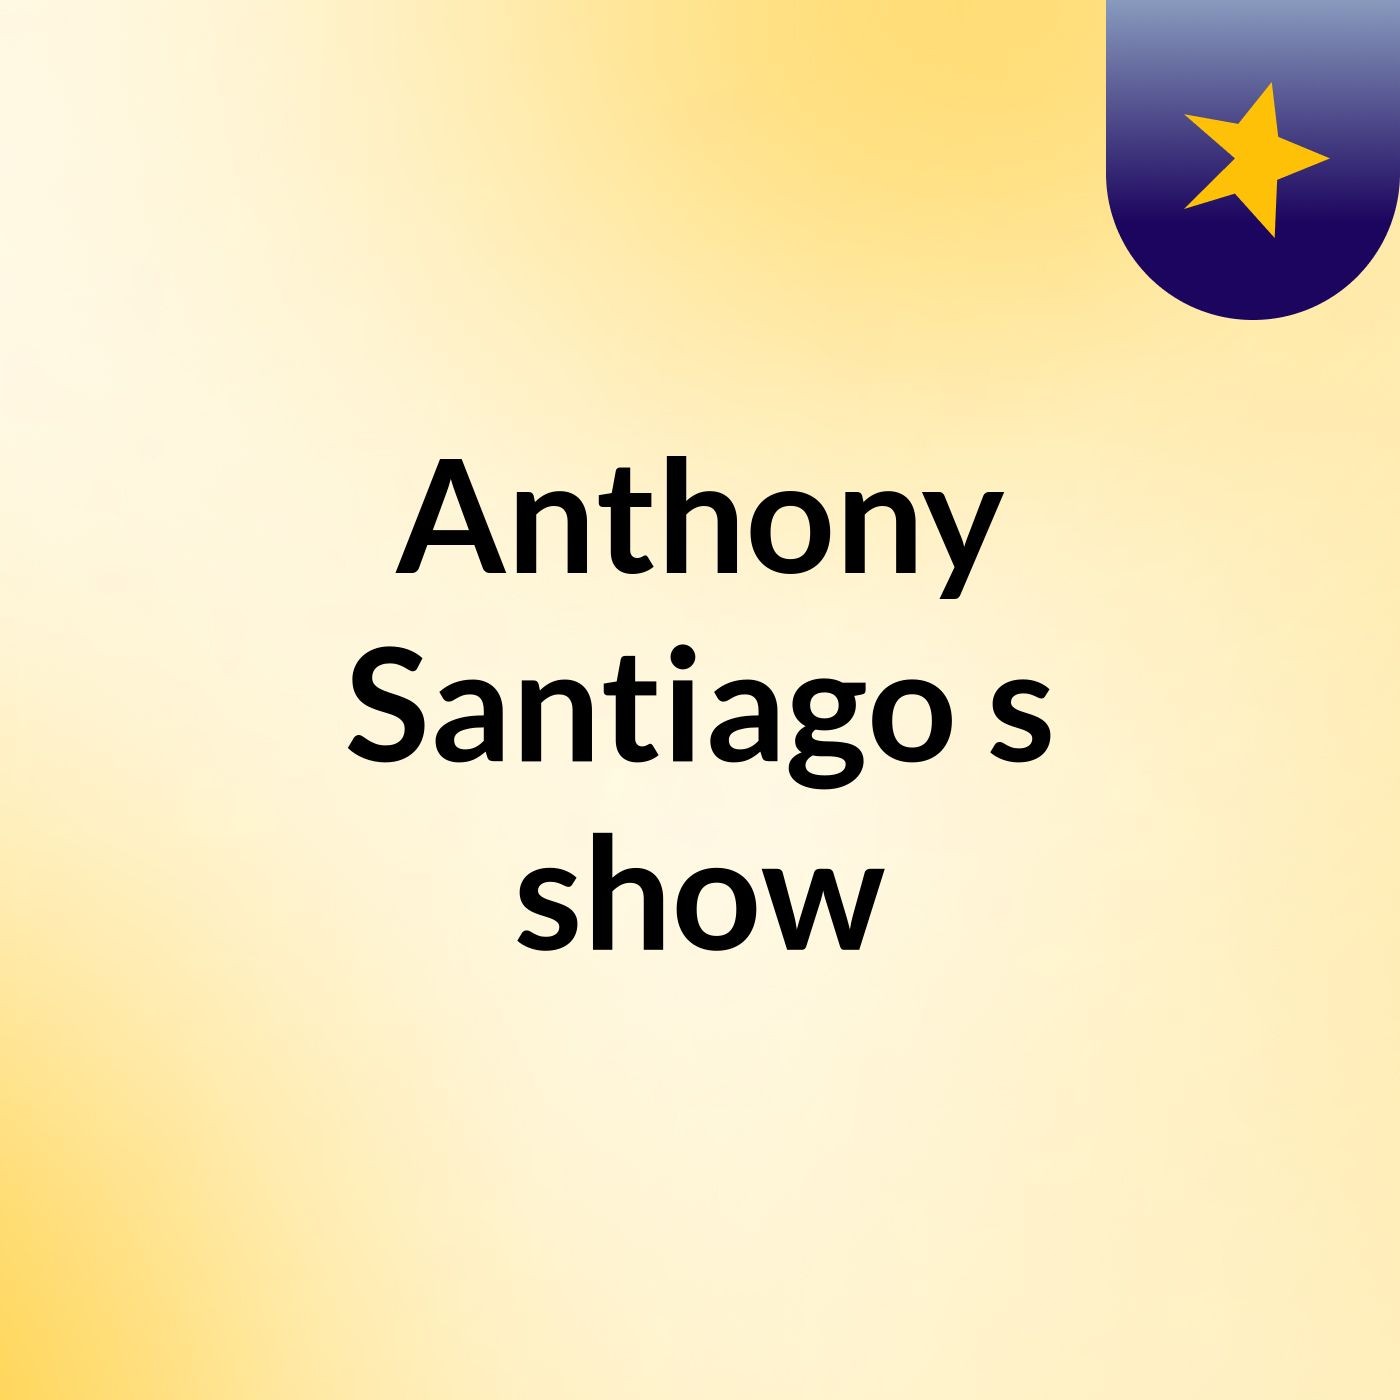 Anthony Santiago's show